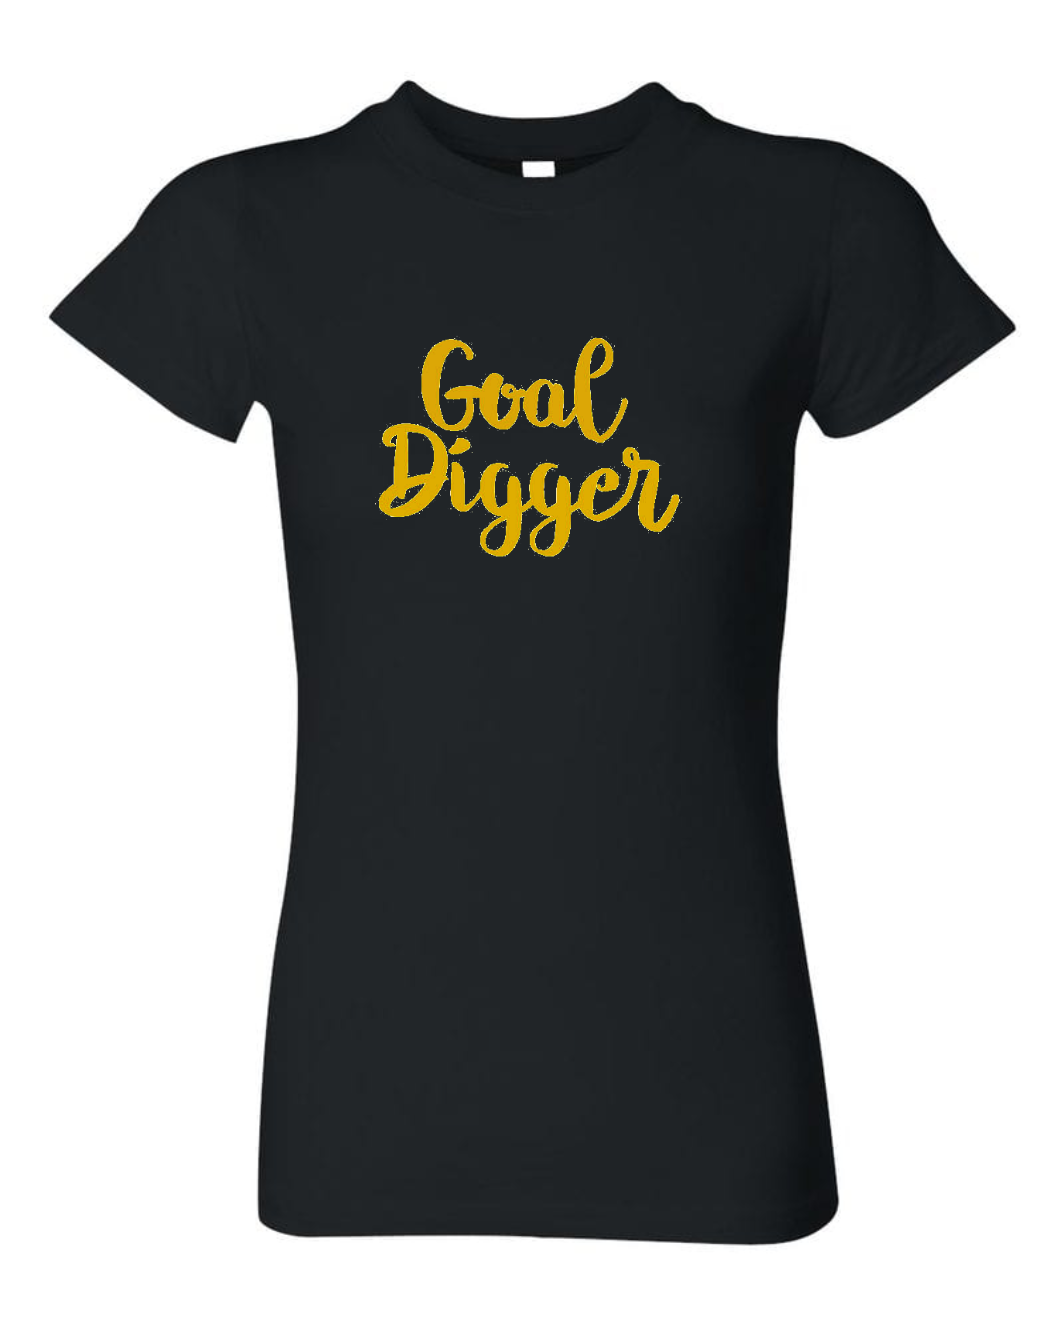 Goal Digger T-shirt